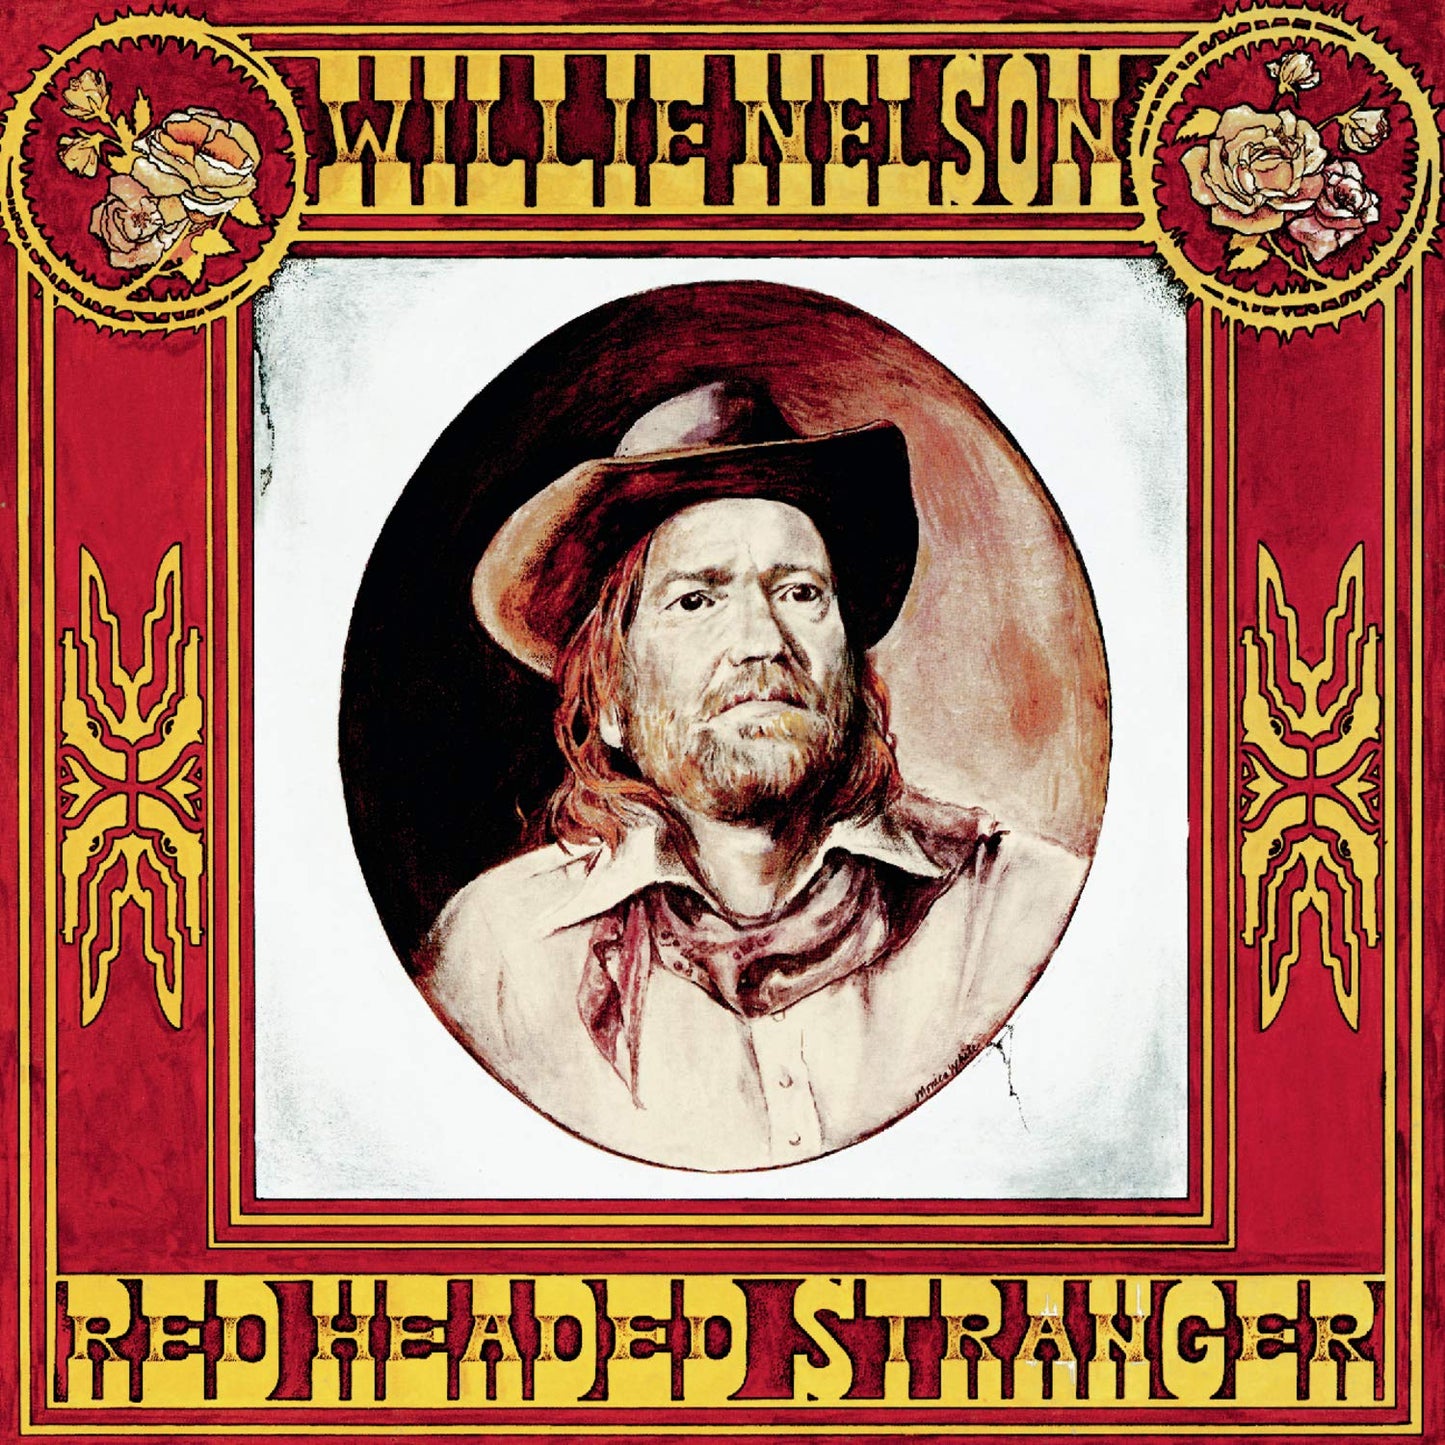 Willie Nelson - Red Headed Stranger - LP